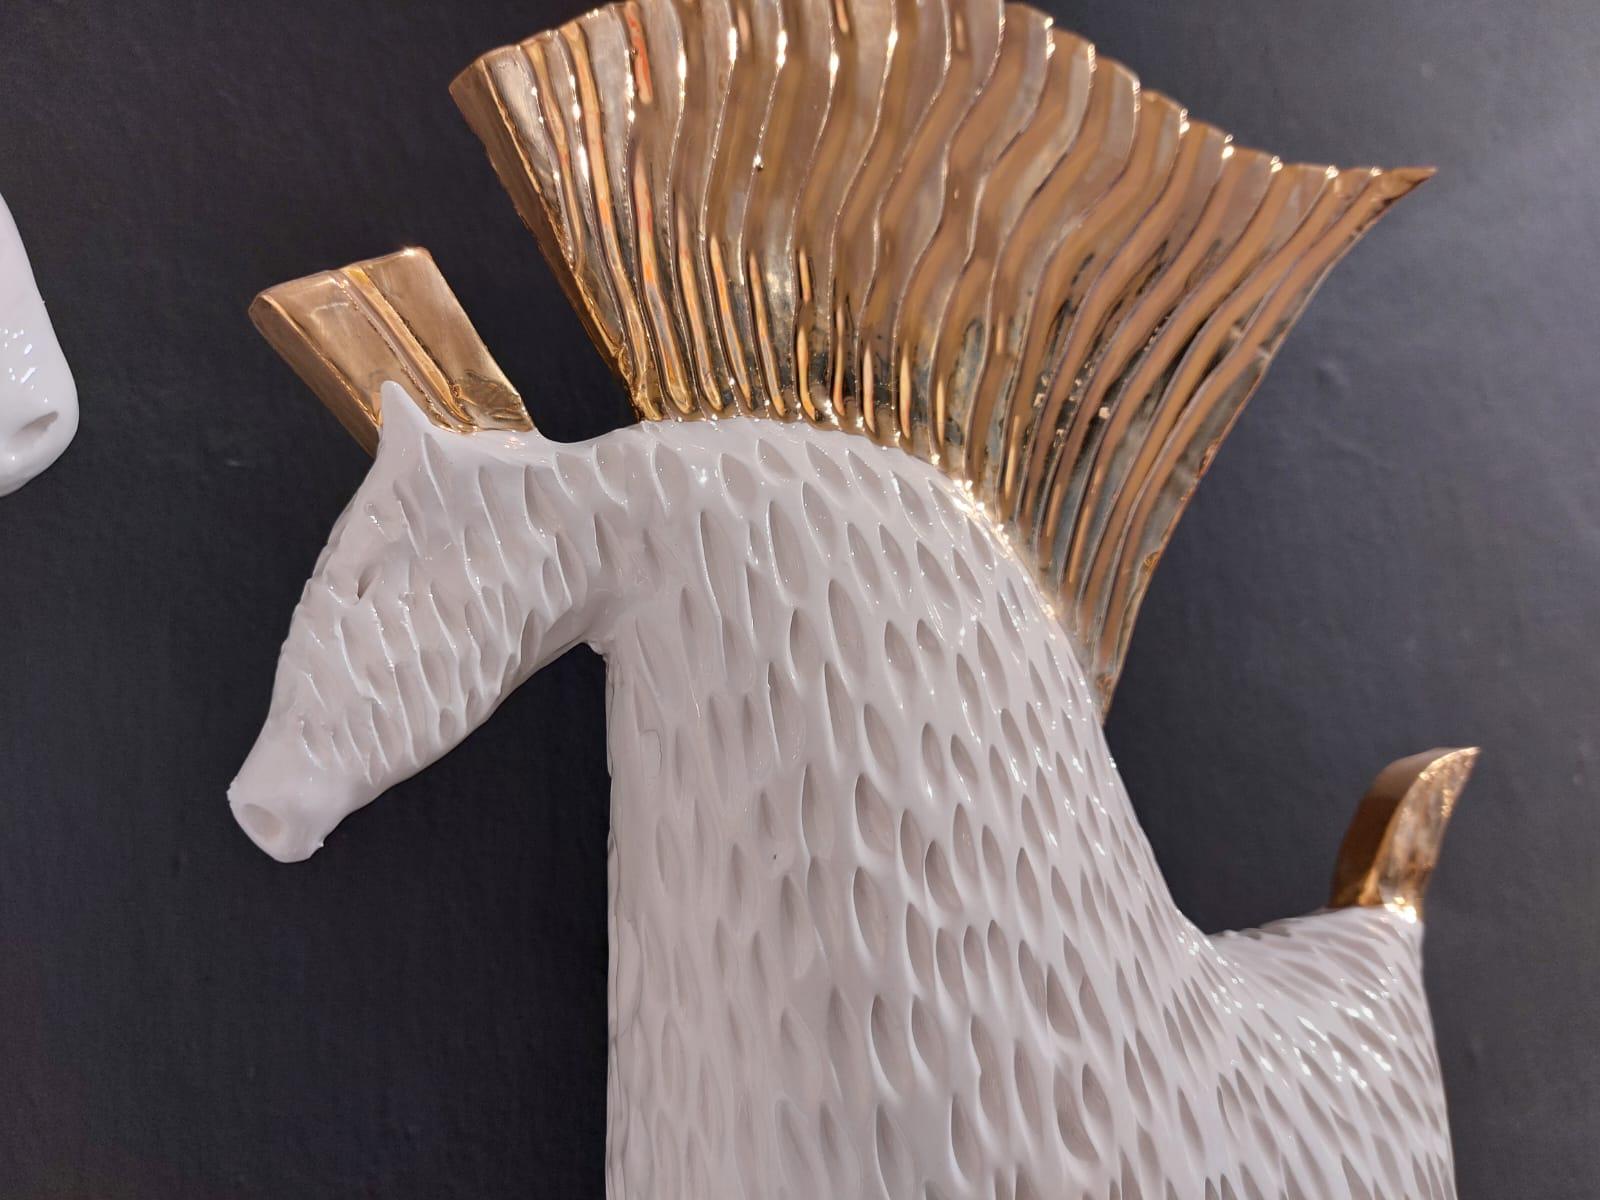 Das Stück ist eine einzigartige Darstellung von zwei Pferden auf moderne Weise. Die Pferde sind sanft mit Blattgold verziert.
Unser Designer fertigt diese Stücke vollständig von Hand an, ohne jegliche Form. Jedes Stück ist anders und von den